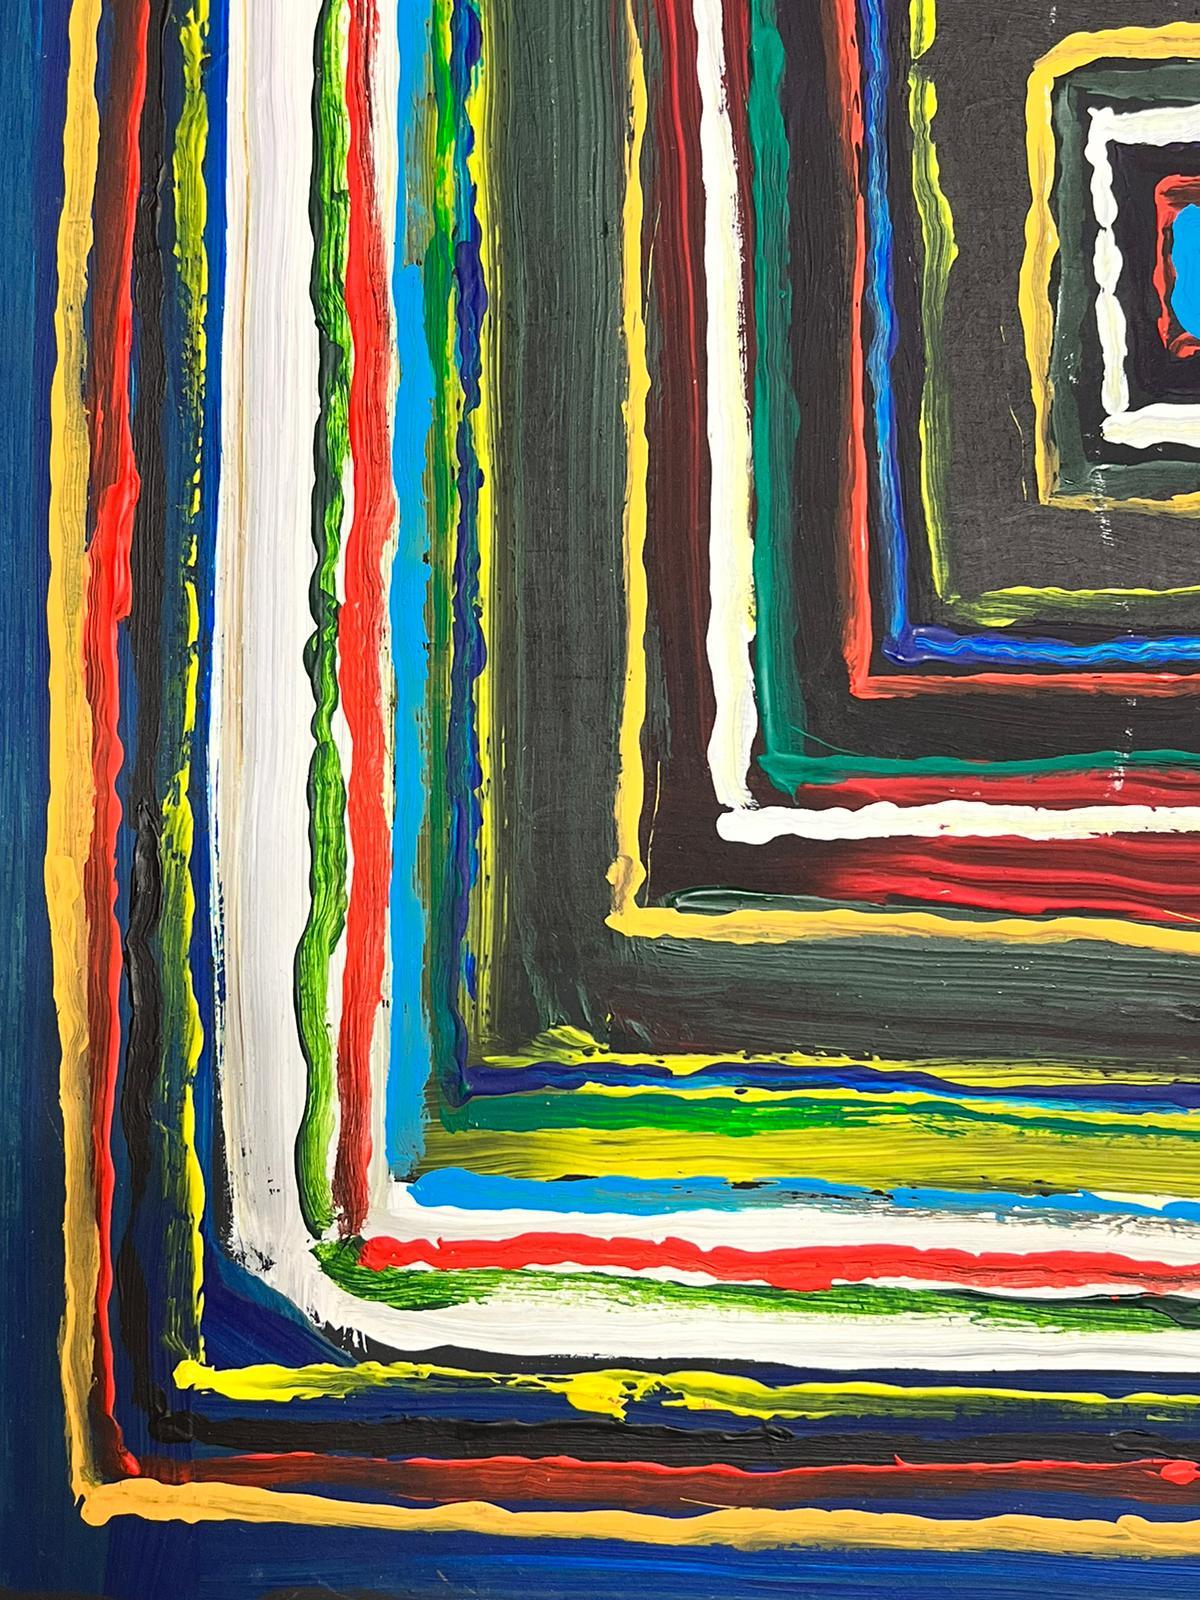 Peinture abstraite britannique moderne et colorée carrée  - Abstrait Painting par Contemporary British 